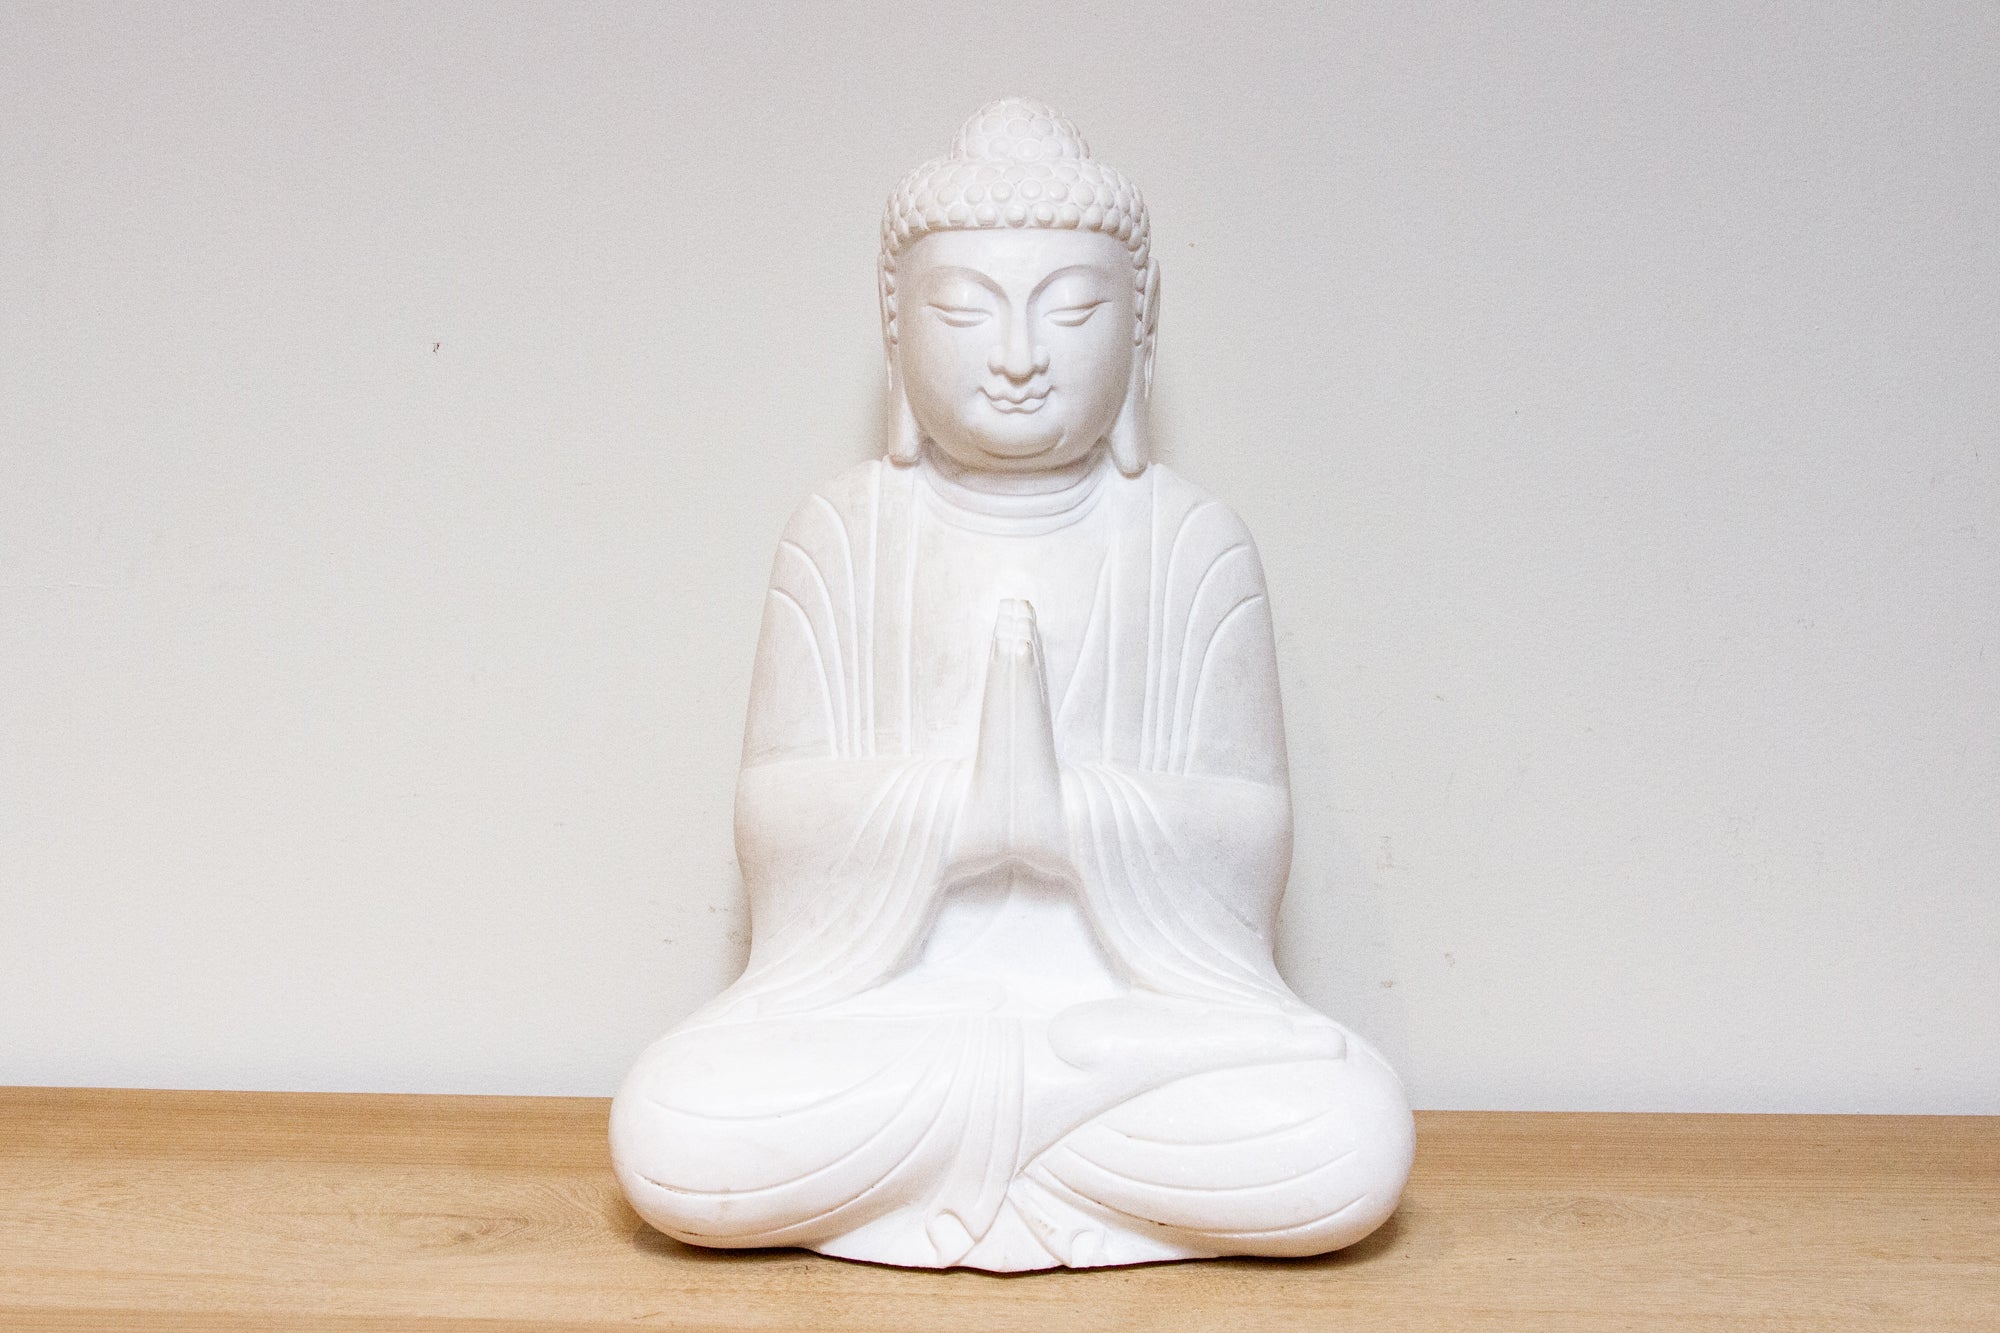 DE-COR | Ispirazione globale, Buddha orante alto e sereno in marmo (commercio)